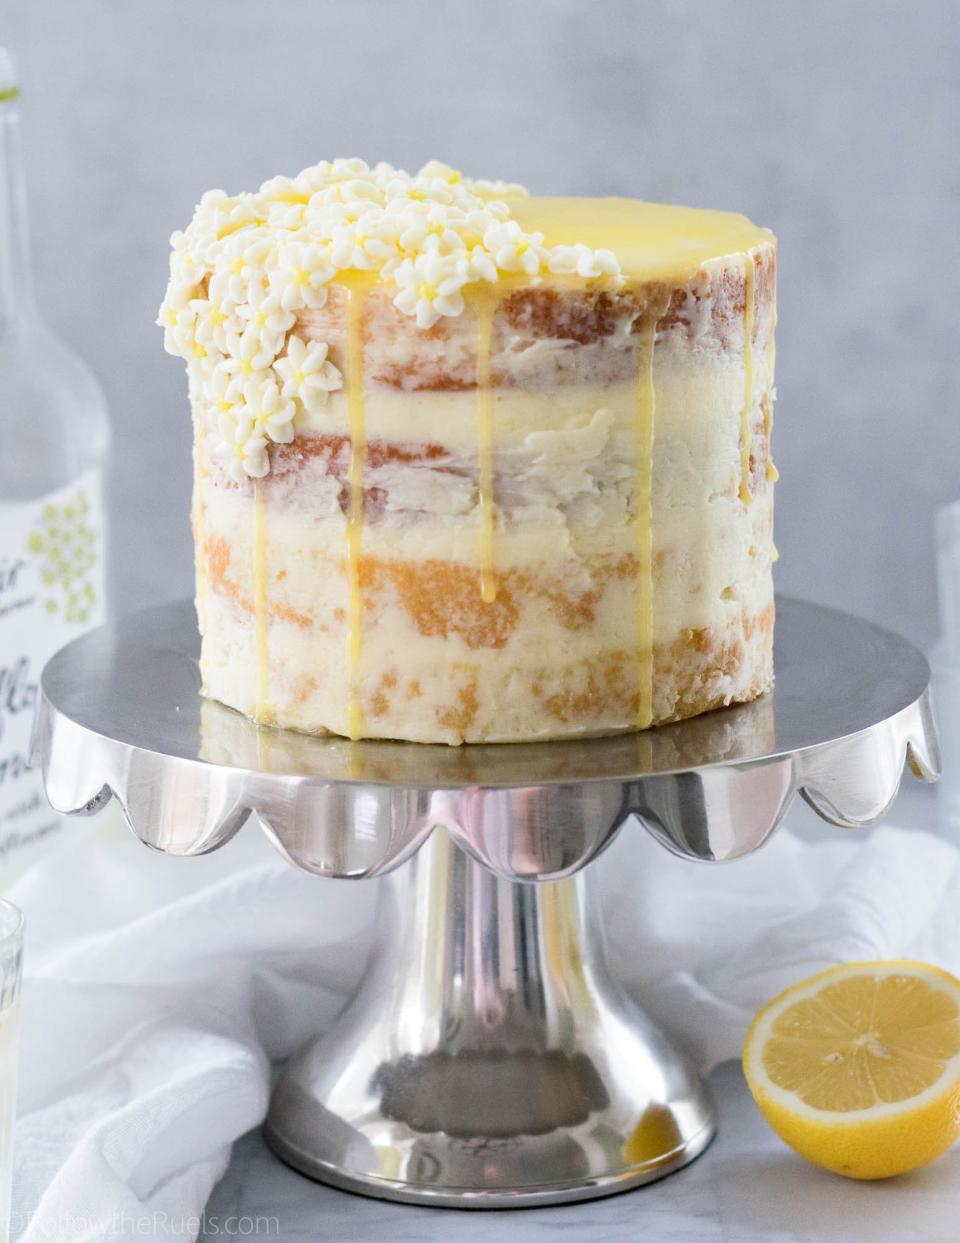 <strong>Get the <a href="http://followtheruels.com/2018/04/lemon-elderflower-cake/" target="_blank">Lemon Elderflower Cake</a> recipe from Follow the Ruels.</strong>